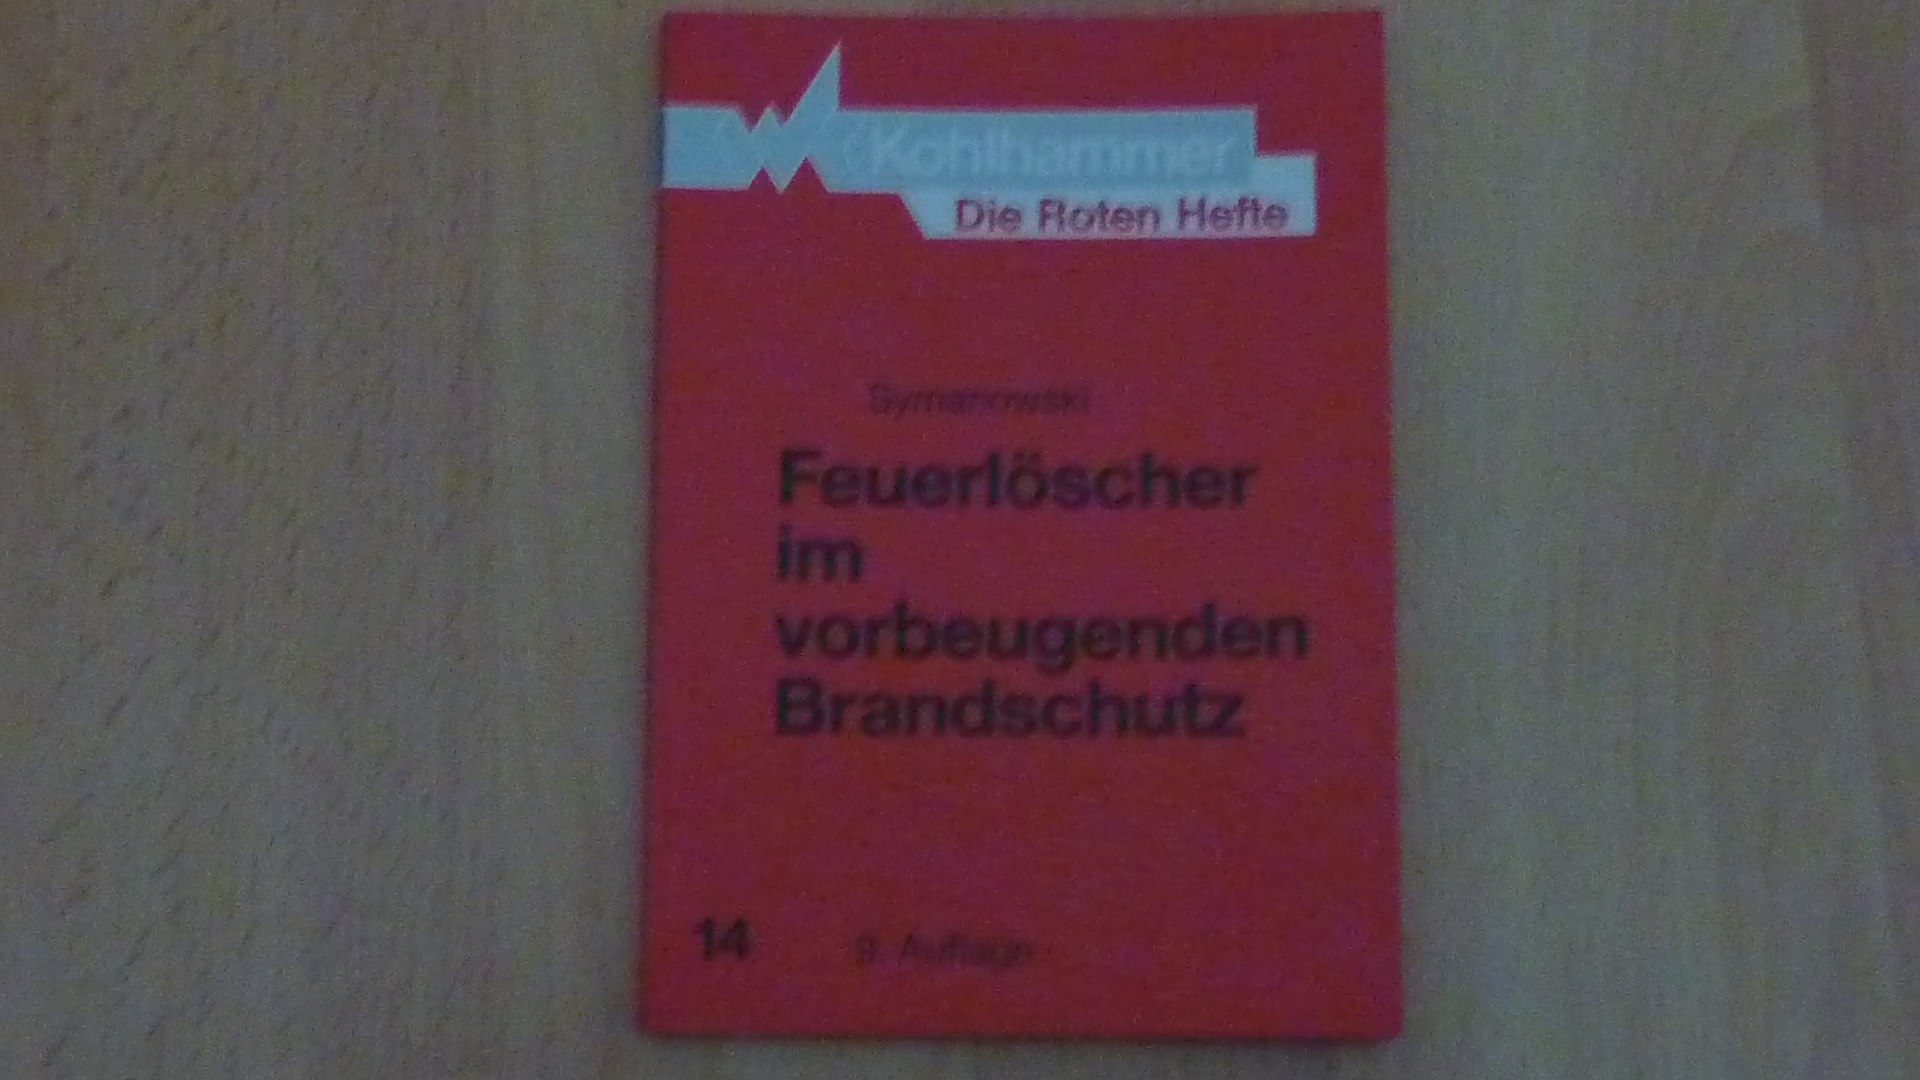 Die Roten Hefte, Bd.14, Feuerlöscher im vorbeugenden Brandschutz. - Willy Symanowski und Peter Symanowski